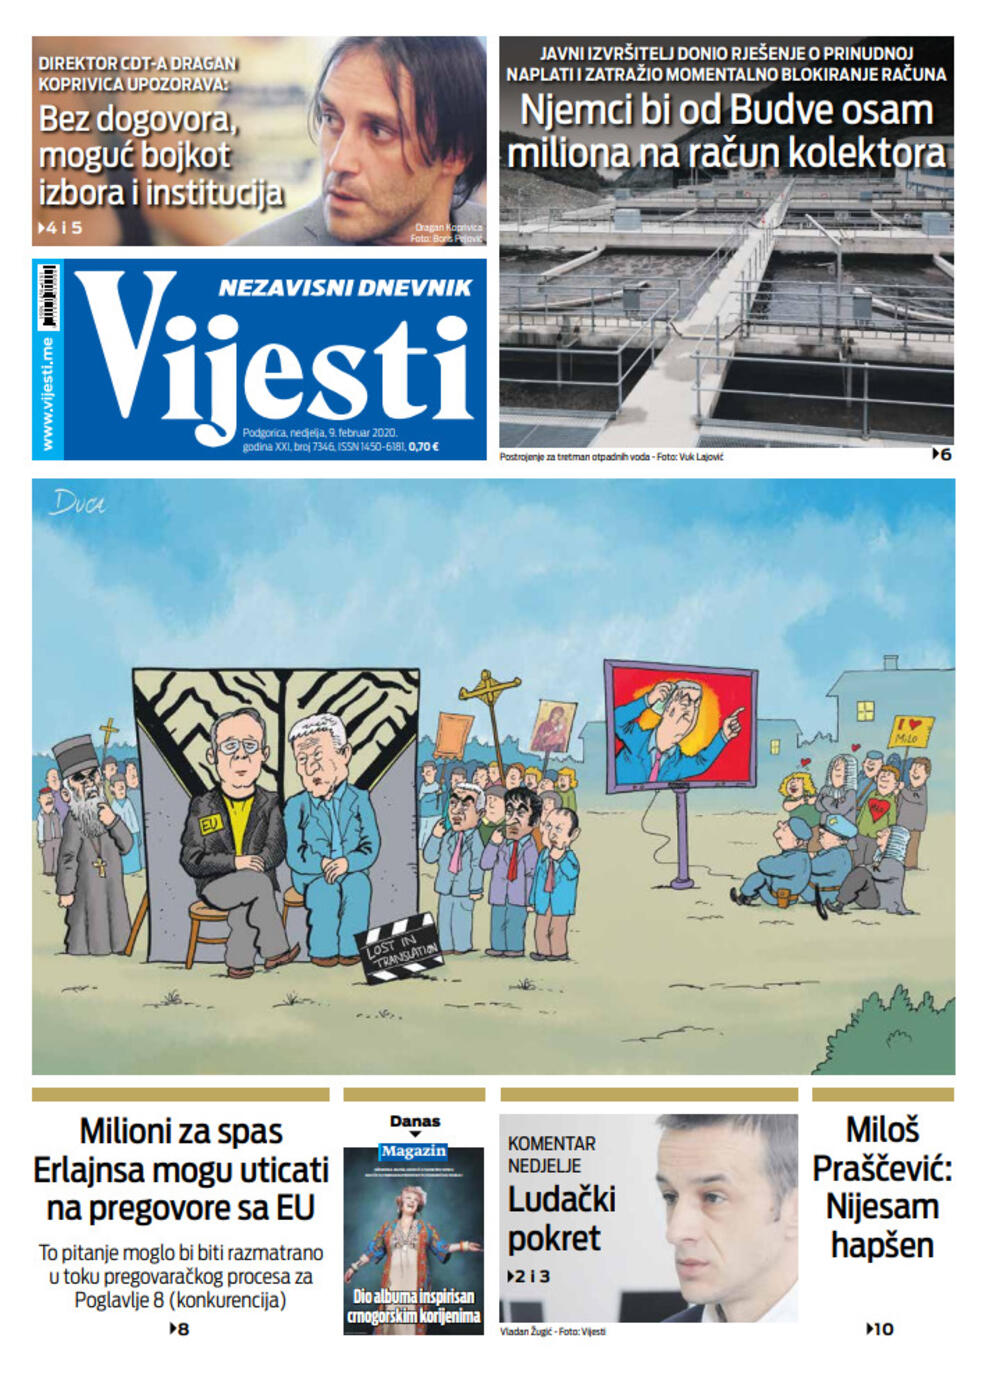 Naslovna strana "Vijesti" za 9. februar 2020., Foto: Vijesti